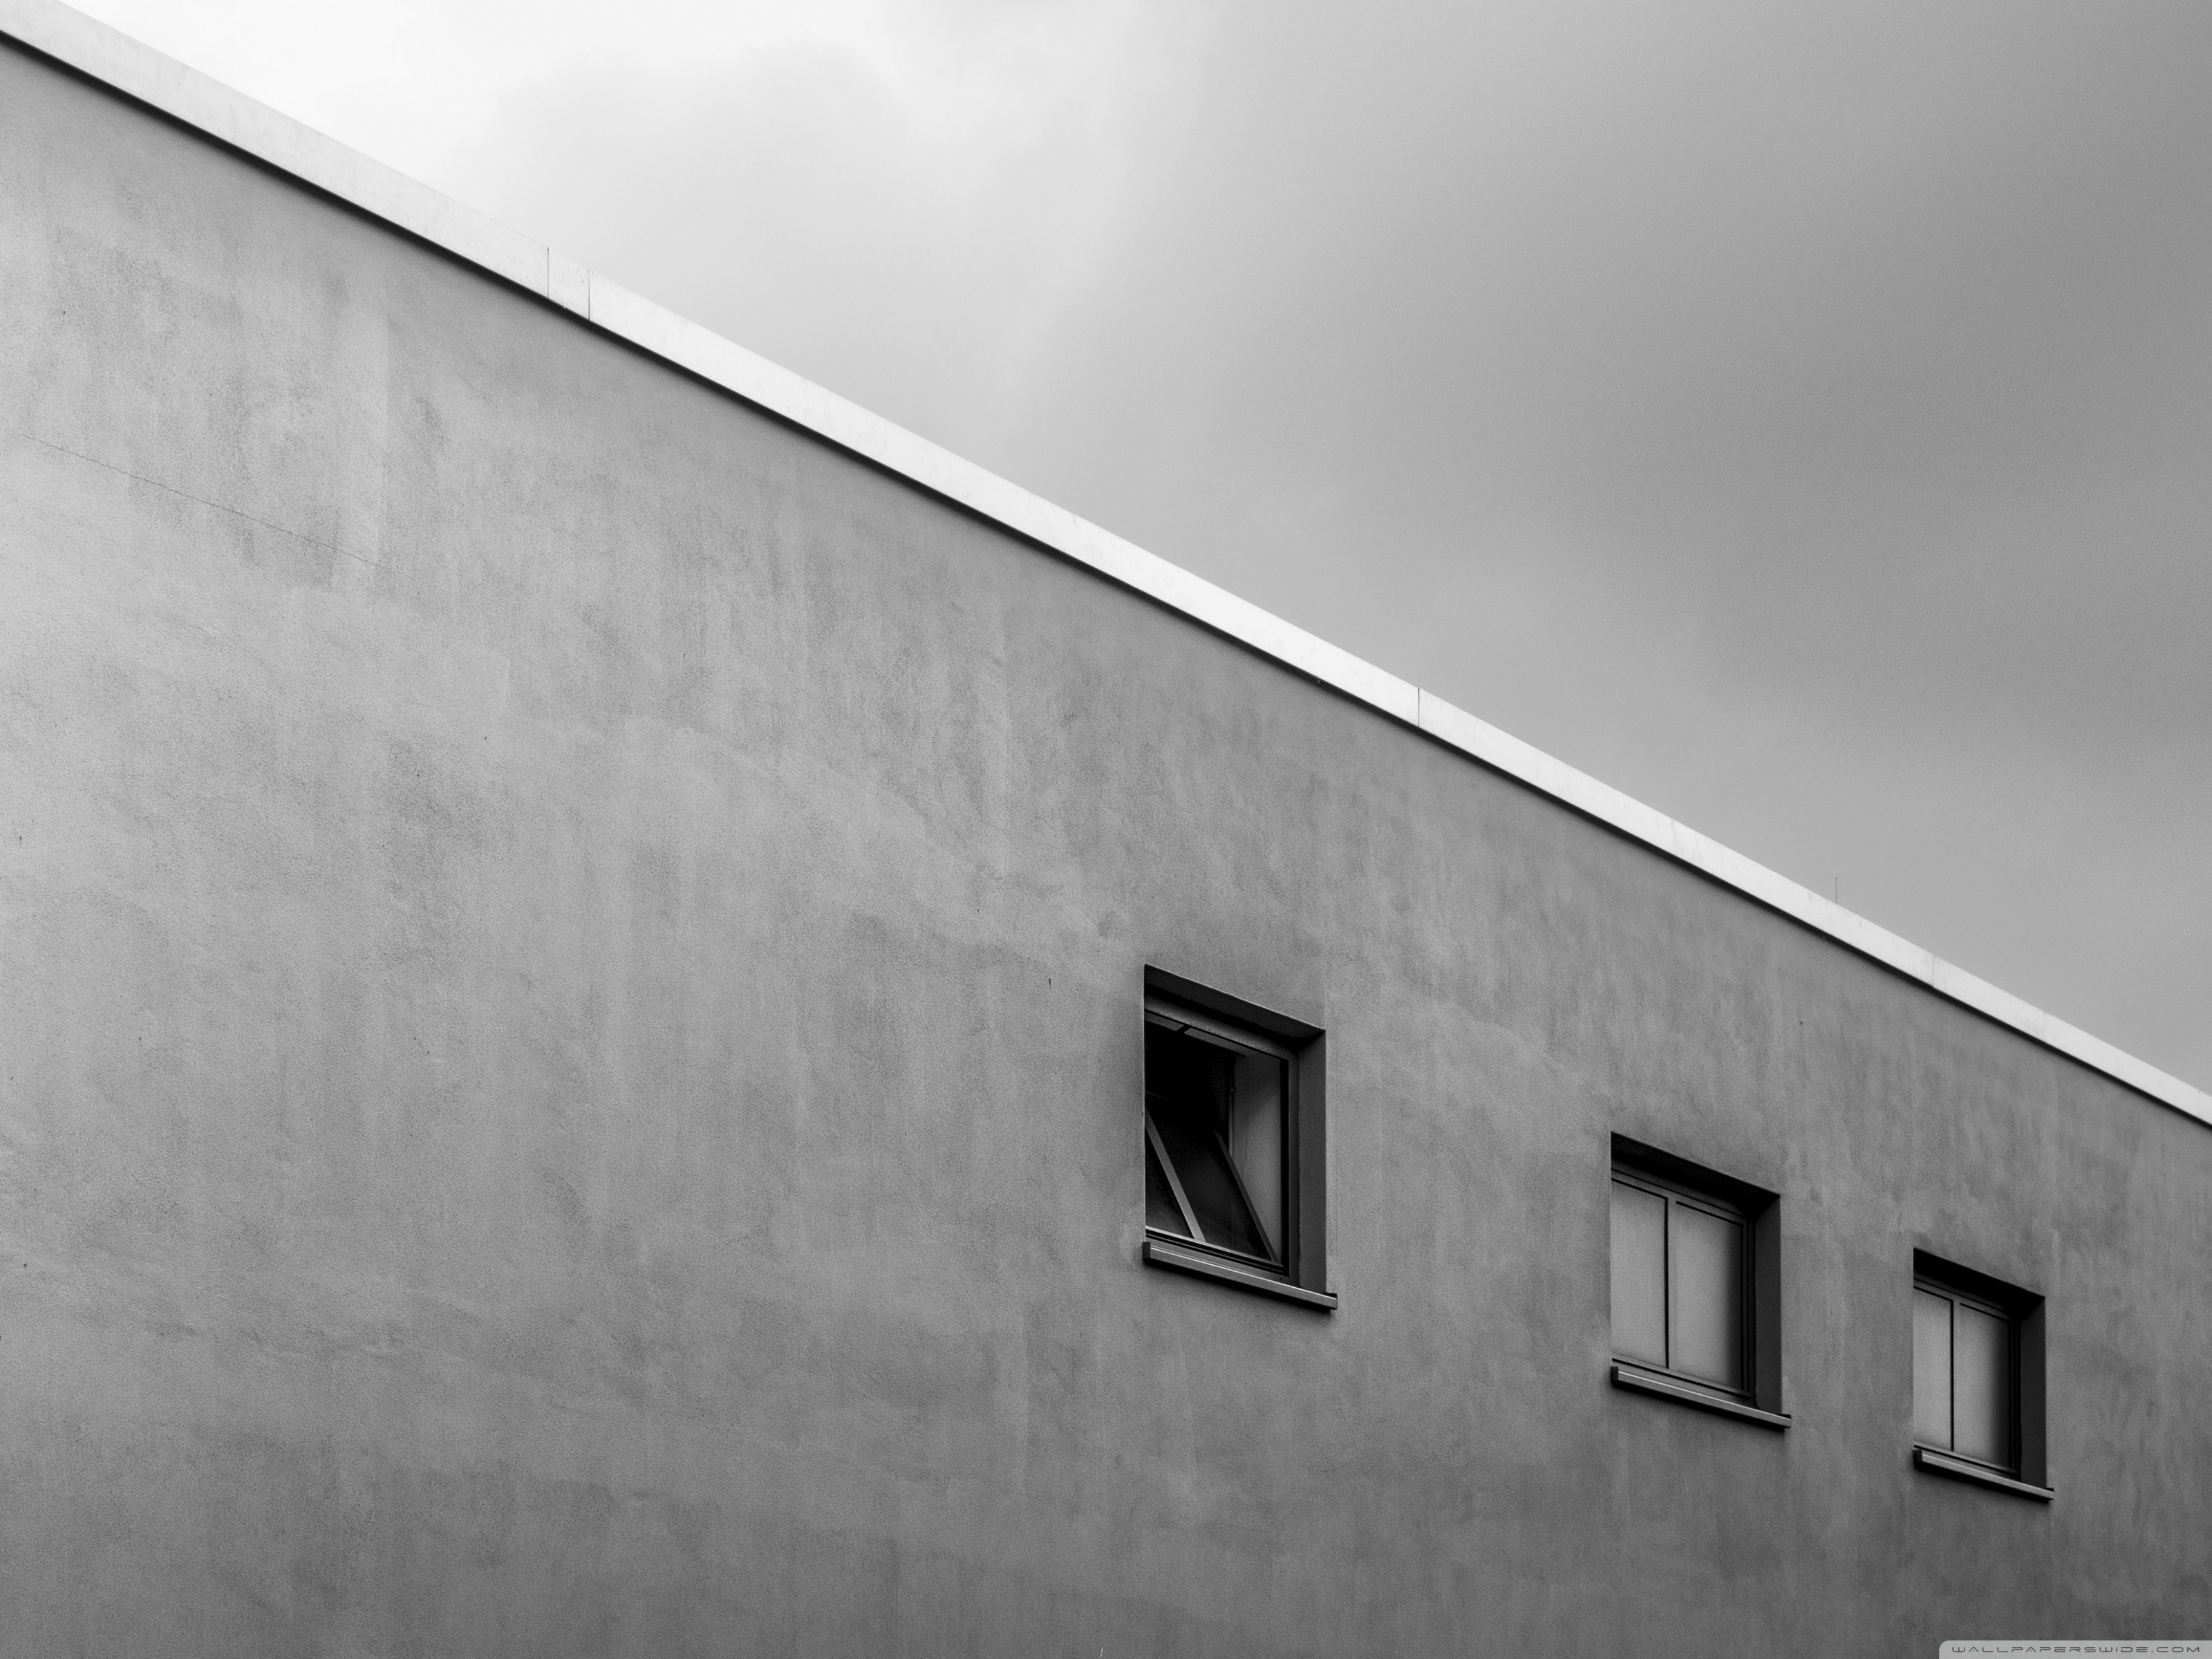 carta da parati di architettura minimalista,bianca,architettura,parete,giorno,linea